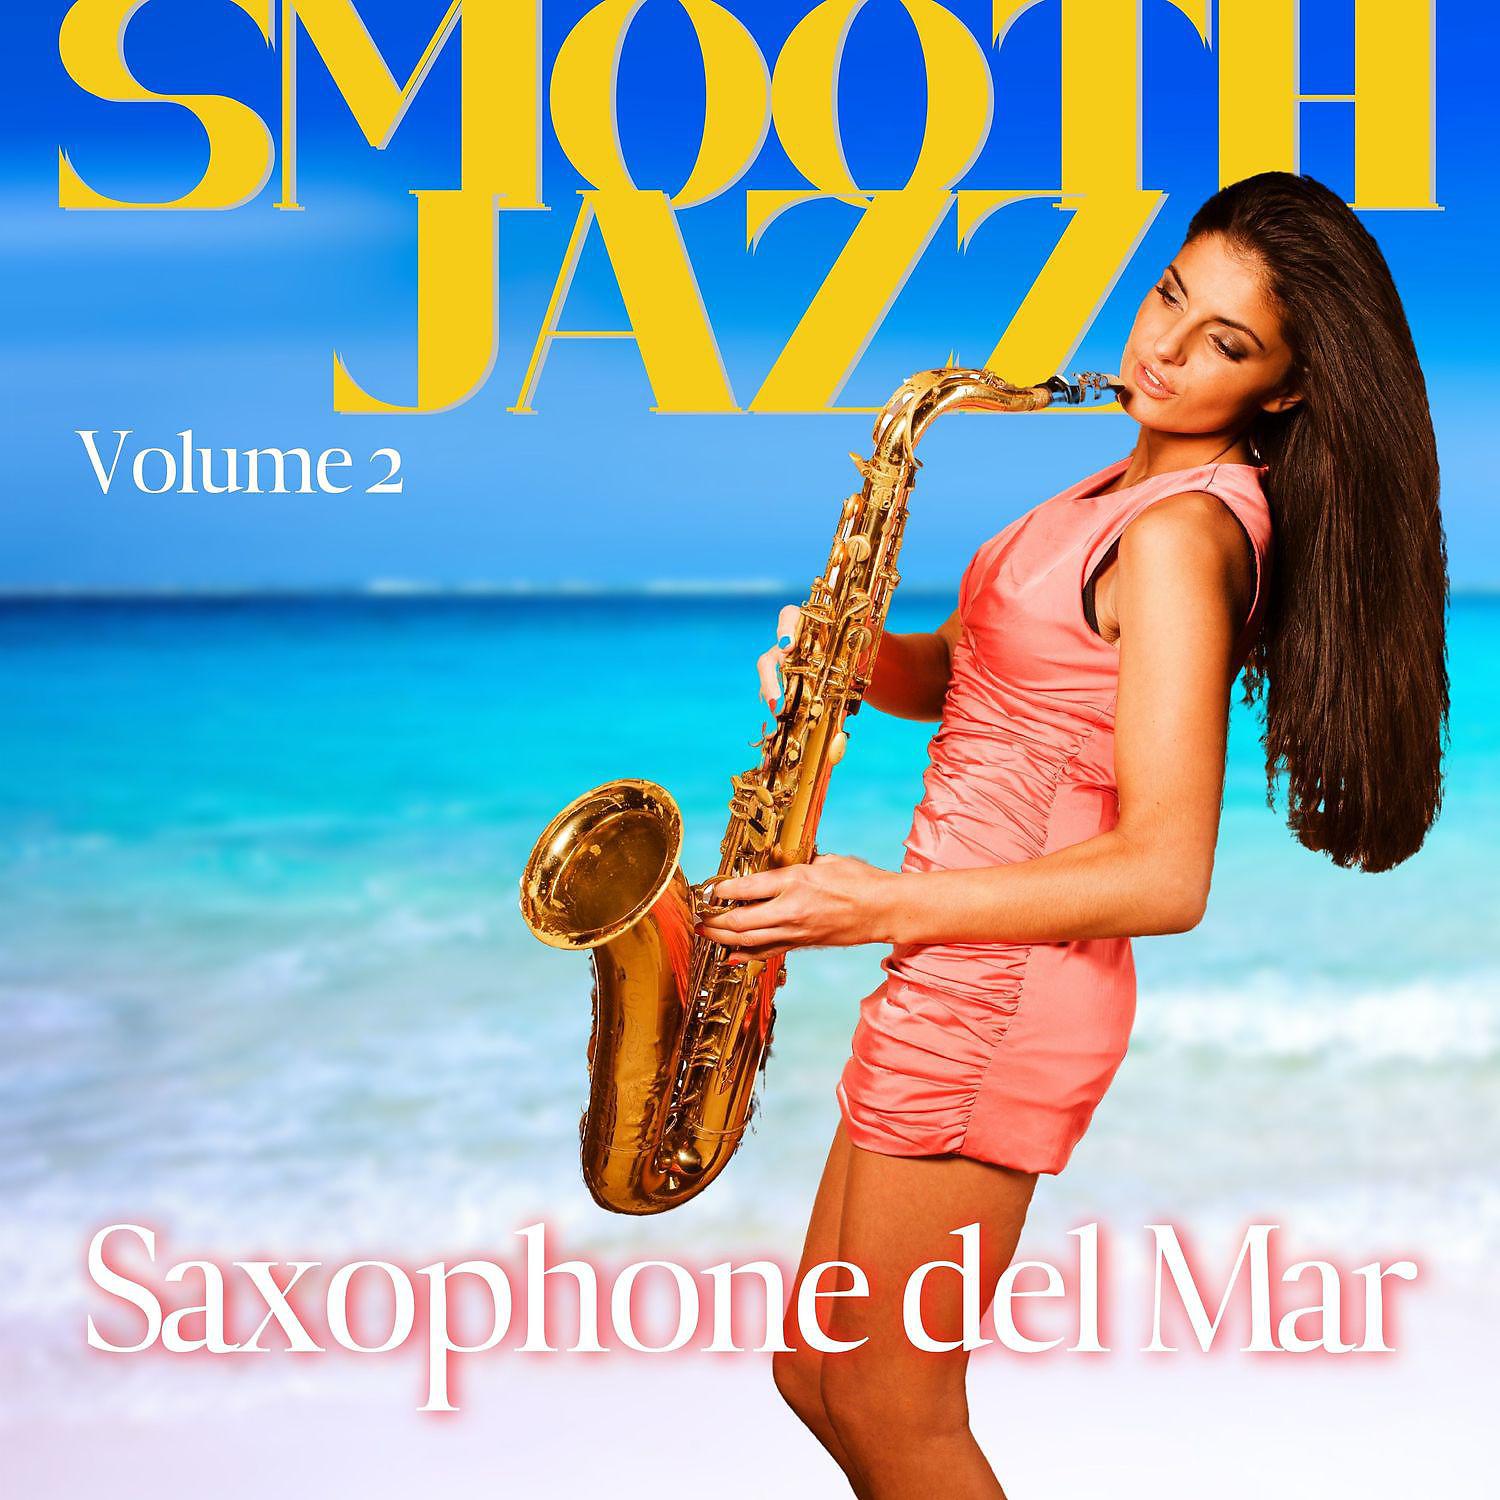 Постер альбома Saxophone del Mar - Smooth Jazz Volume 2